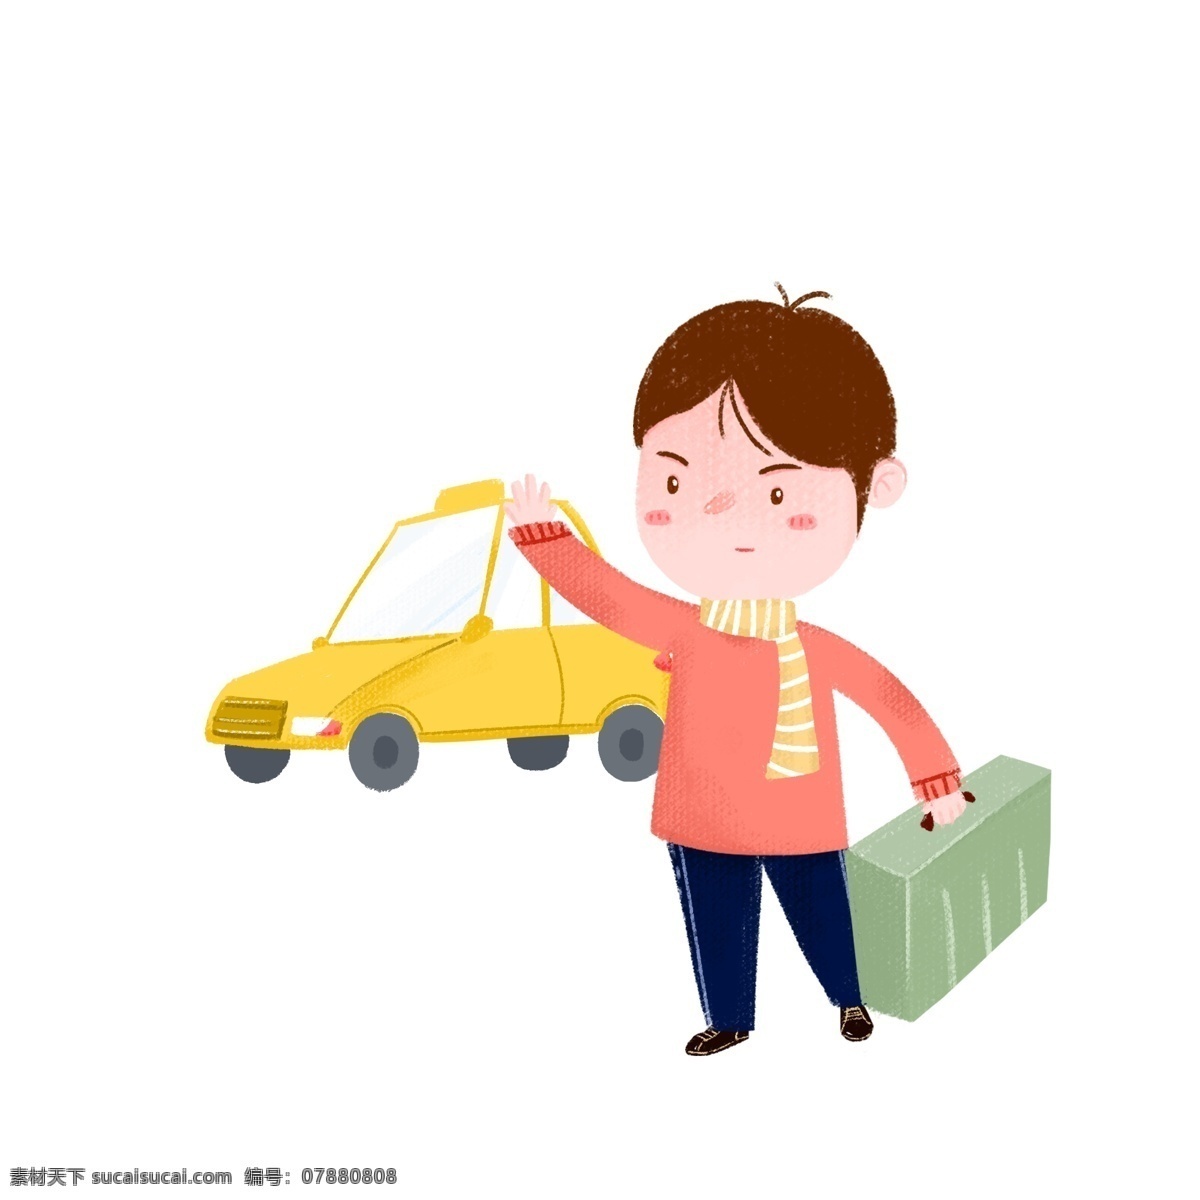 春运 人物 出租车 插画 黄色的出租车 黄色的围巾 卡通人物 帅气的小男孩 春运人物插画 绿色的行李箱